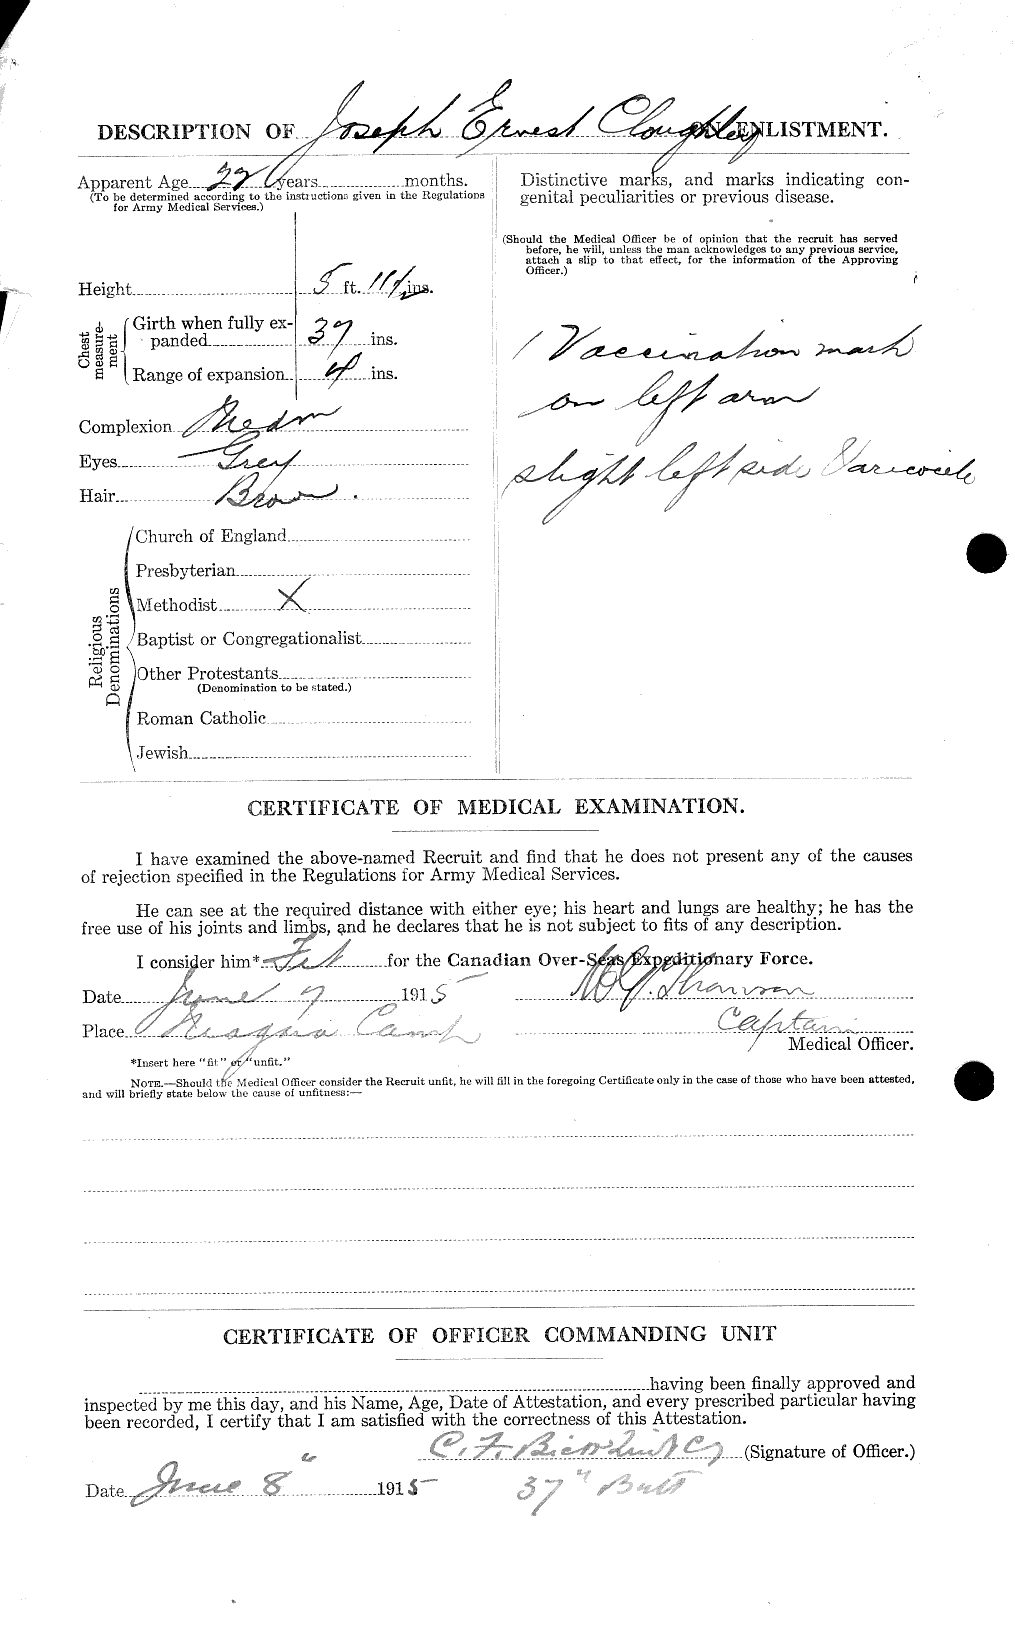 Dossiers du Personnel de la Première Guerre mondiale - CEC 026025b